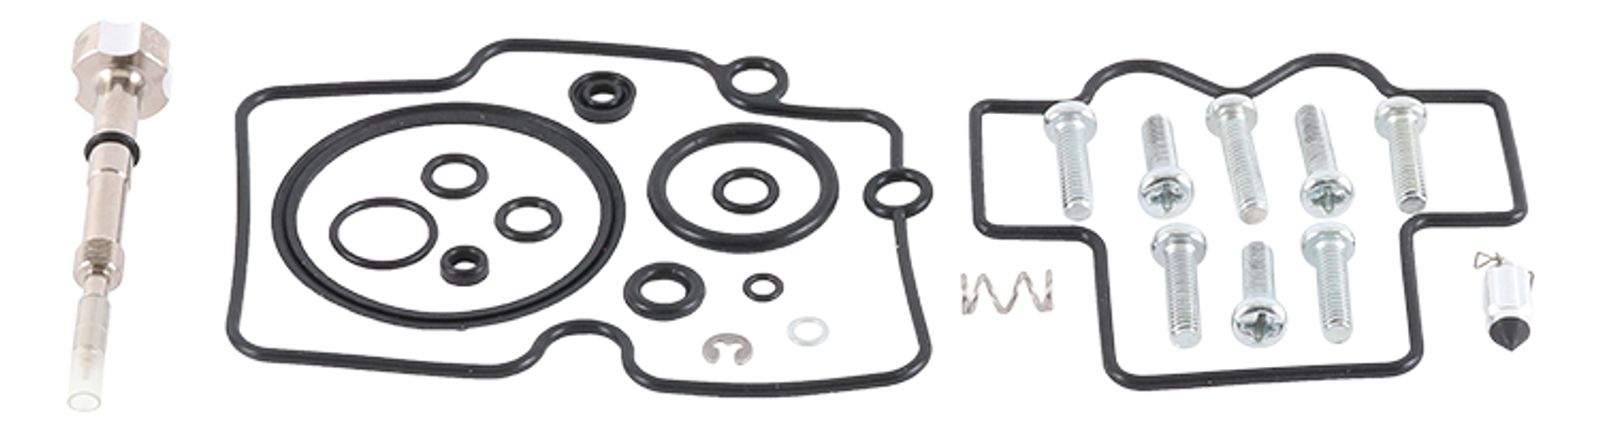 Wrp Carb Repair Kits - WRP261520 image